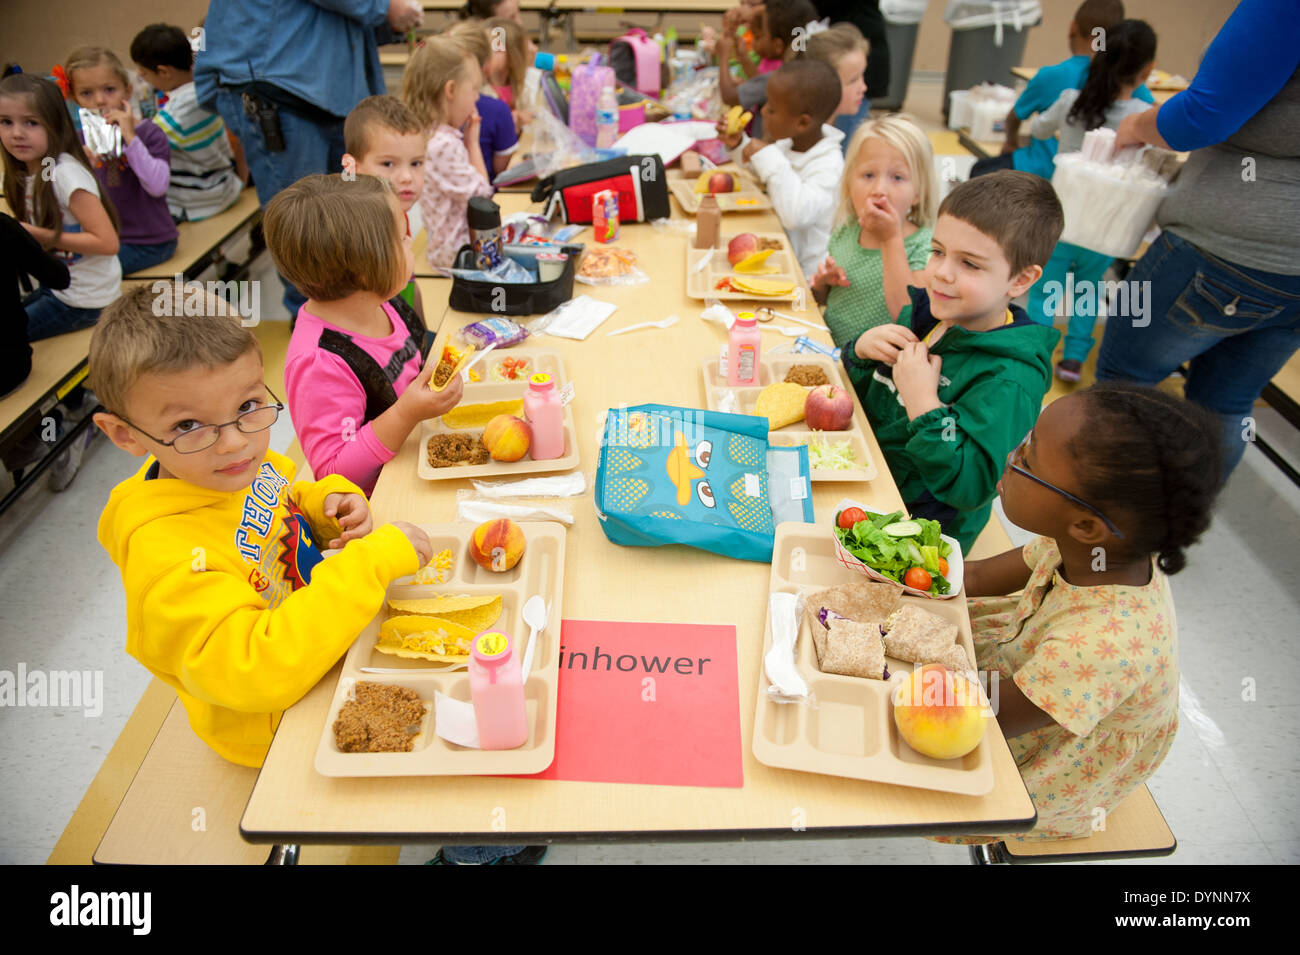 https://c8.alamy.com/comp/DYNN7X/elementary-school-children-sitting-at-tables-having-lunch-in-a-cafeteria-DYNN7X.jpg